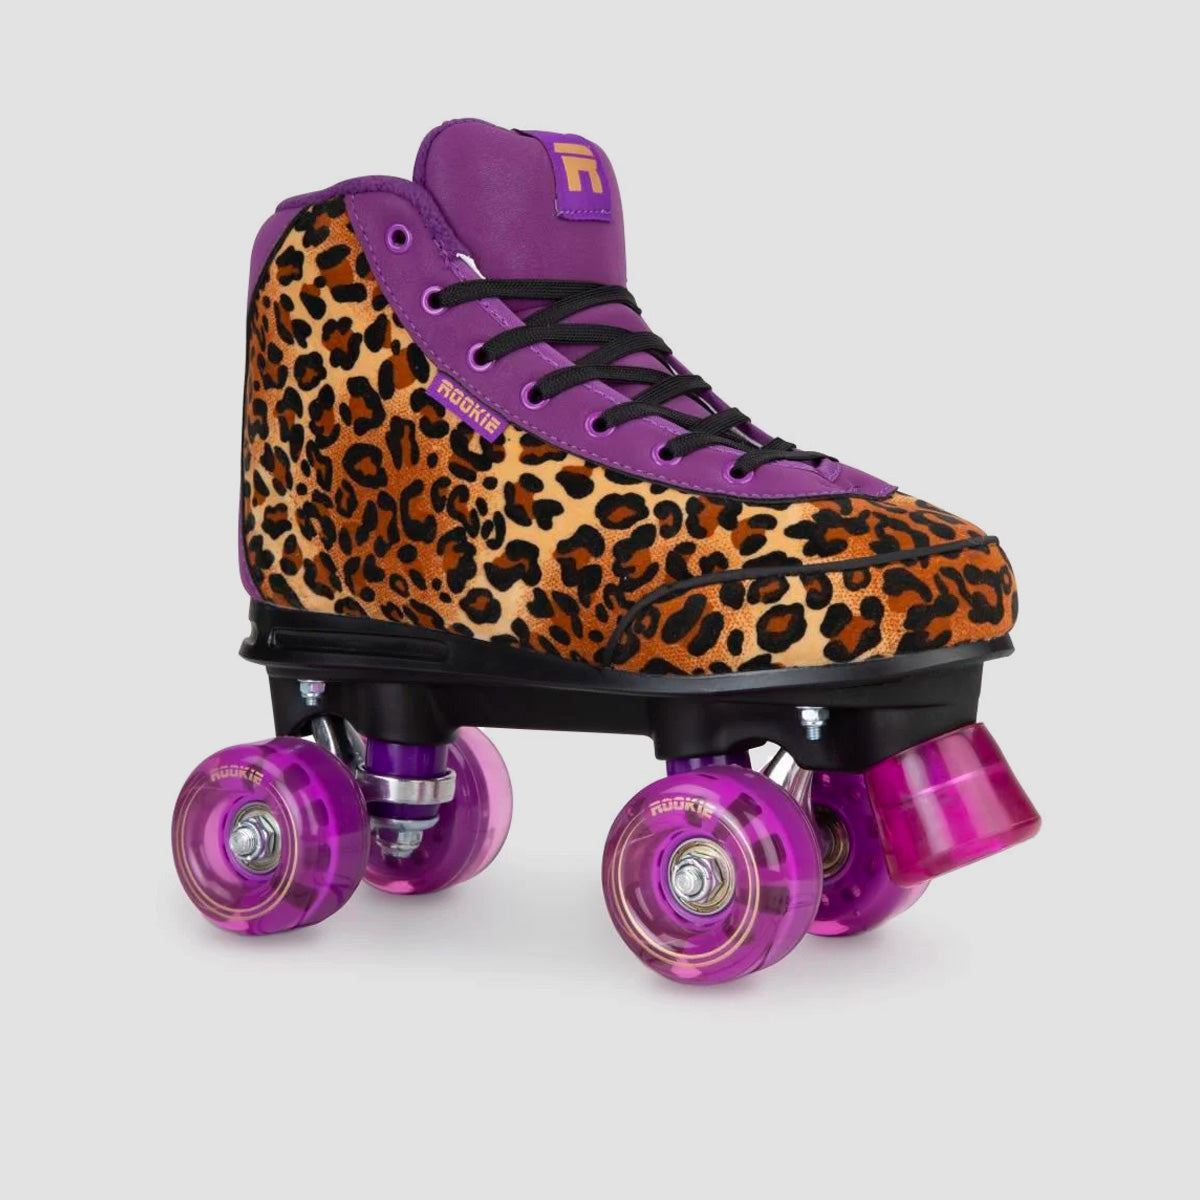 Rookie Harmony V2 Quad Skates Leopard